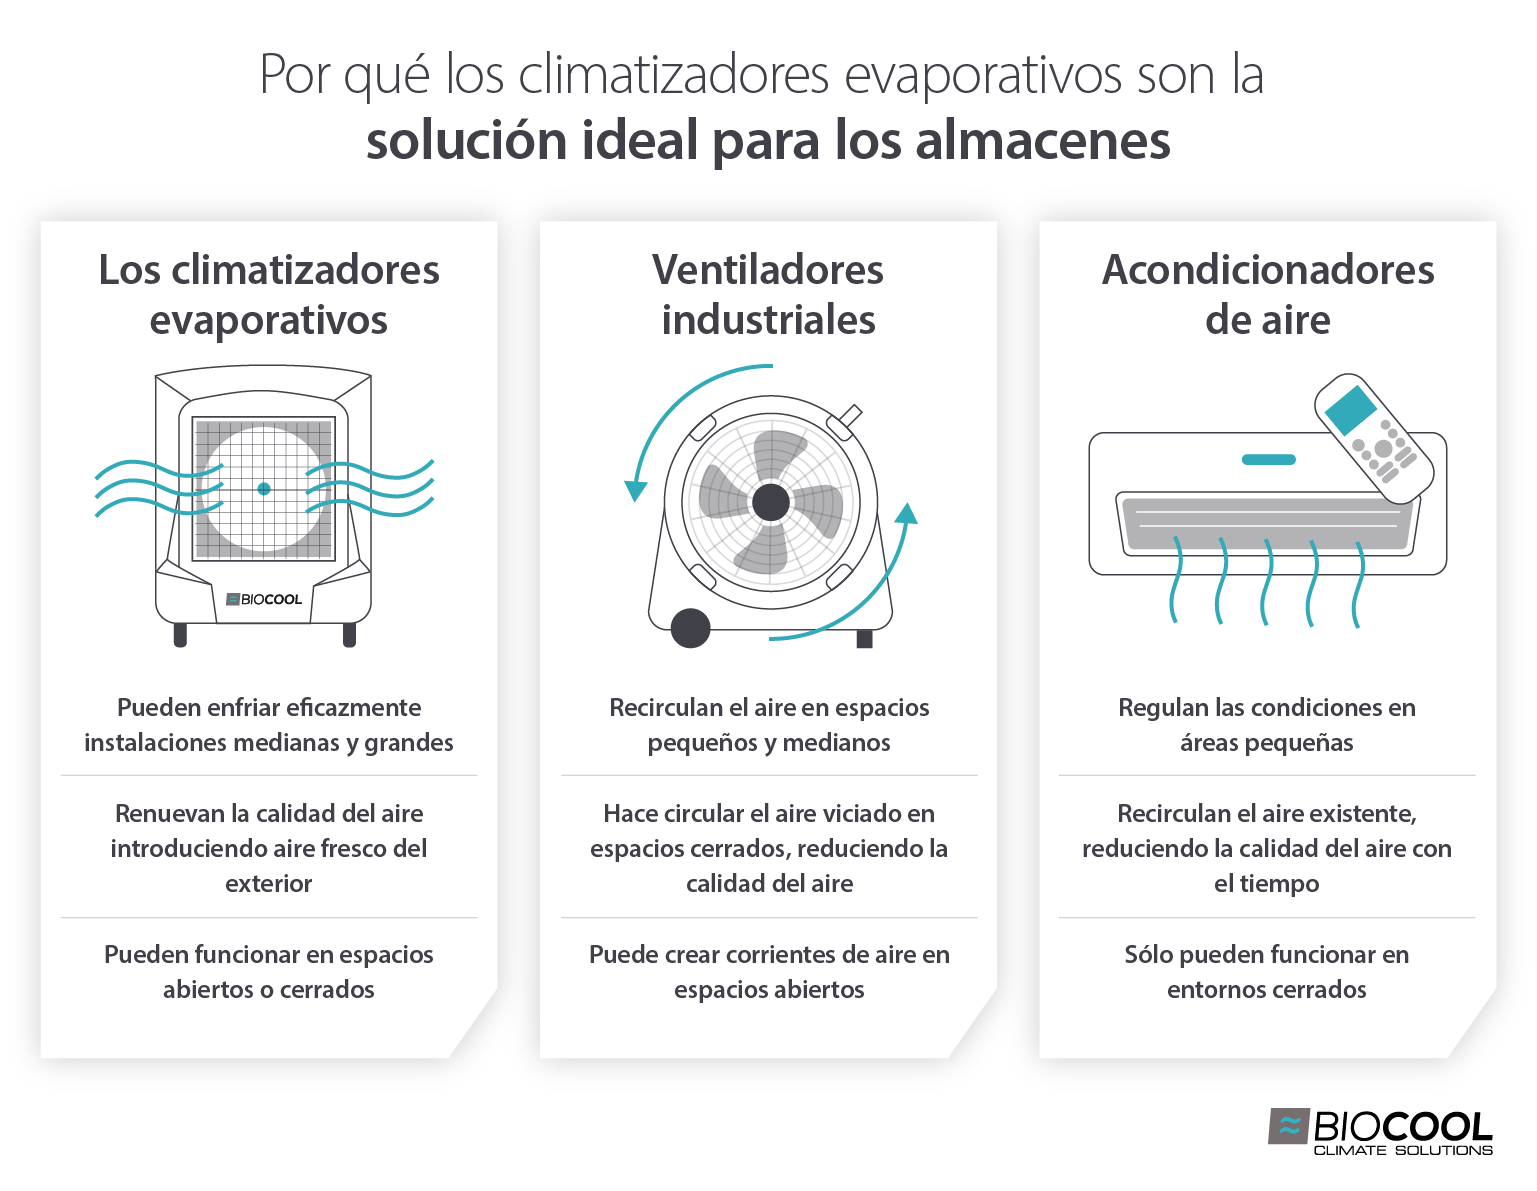 Diagrama infográfico que muestra las características y beneficios de los climatizadores evaporativos para la refrigeración en comparación con los aires acondicionados y los ventiladores industriales